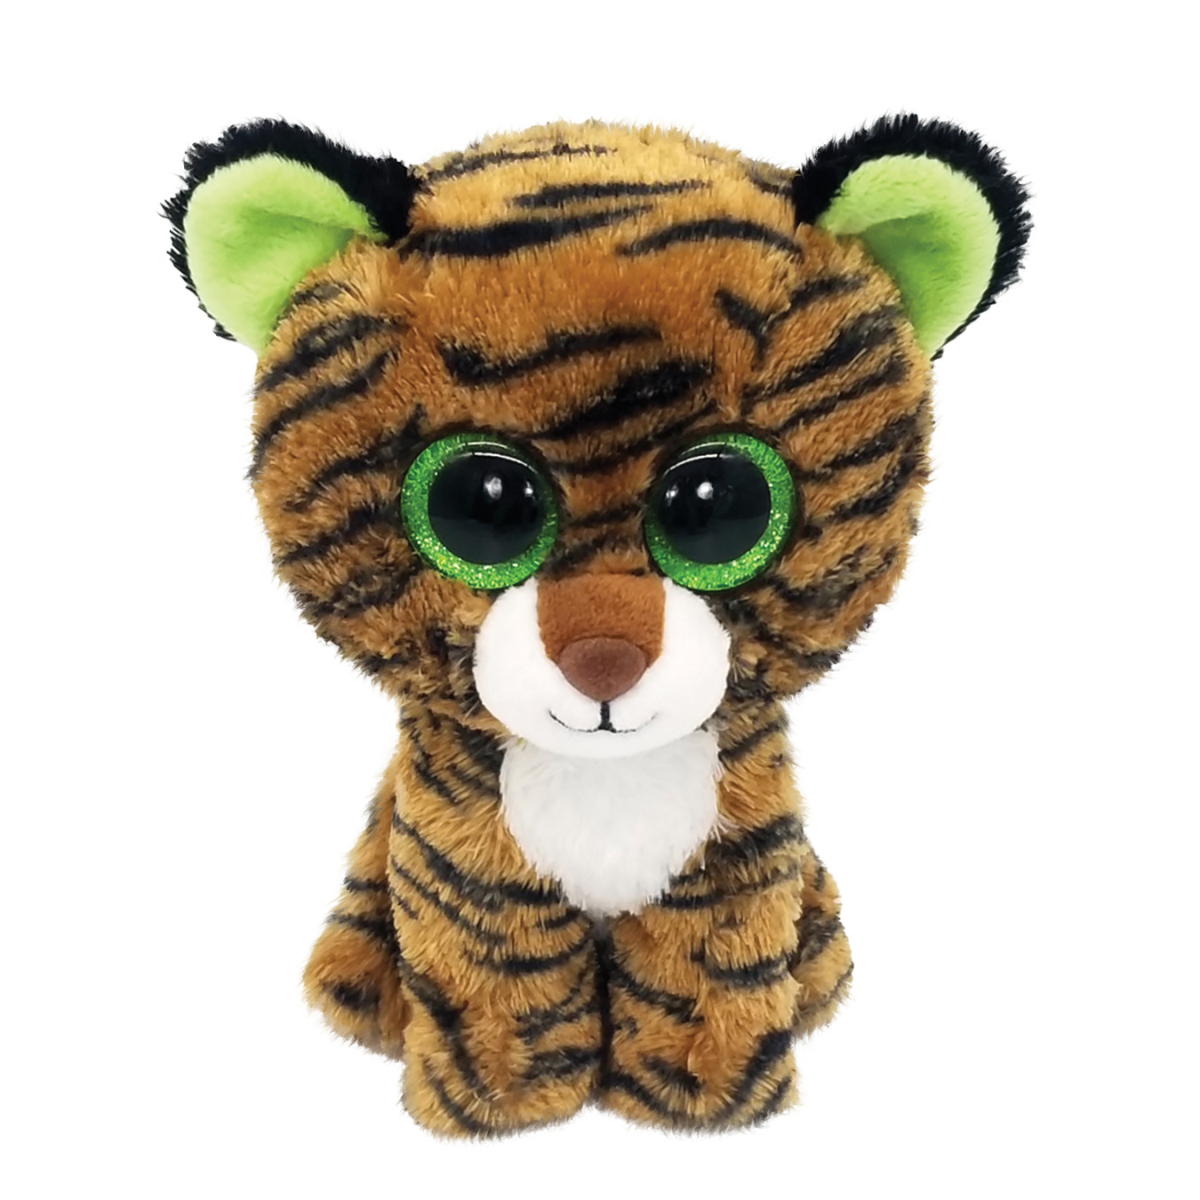 Ty - peluche - beanie boos - tigre - tiggy - marrone tigrato - occhi verdi grandi e glitter - il pupazzo con gli occhi grandi scintillanti - 15 cm - 36387 - TY